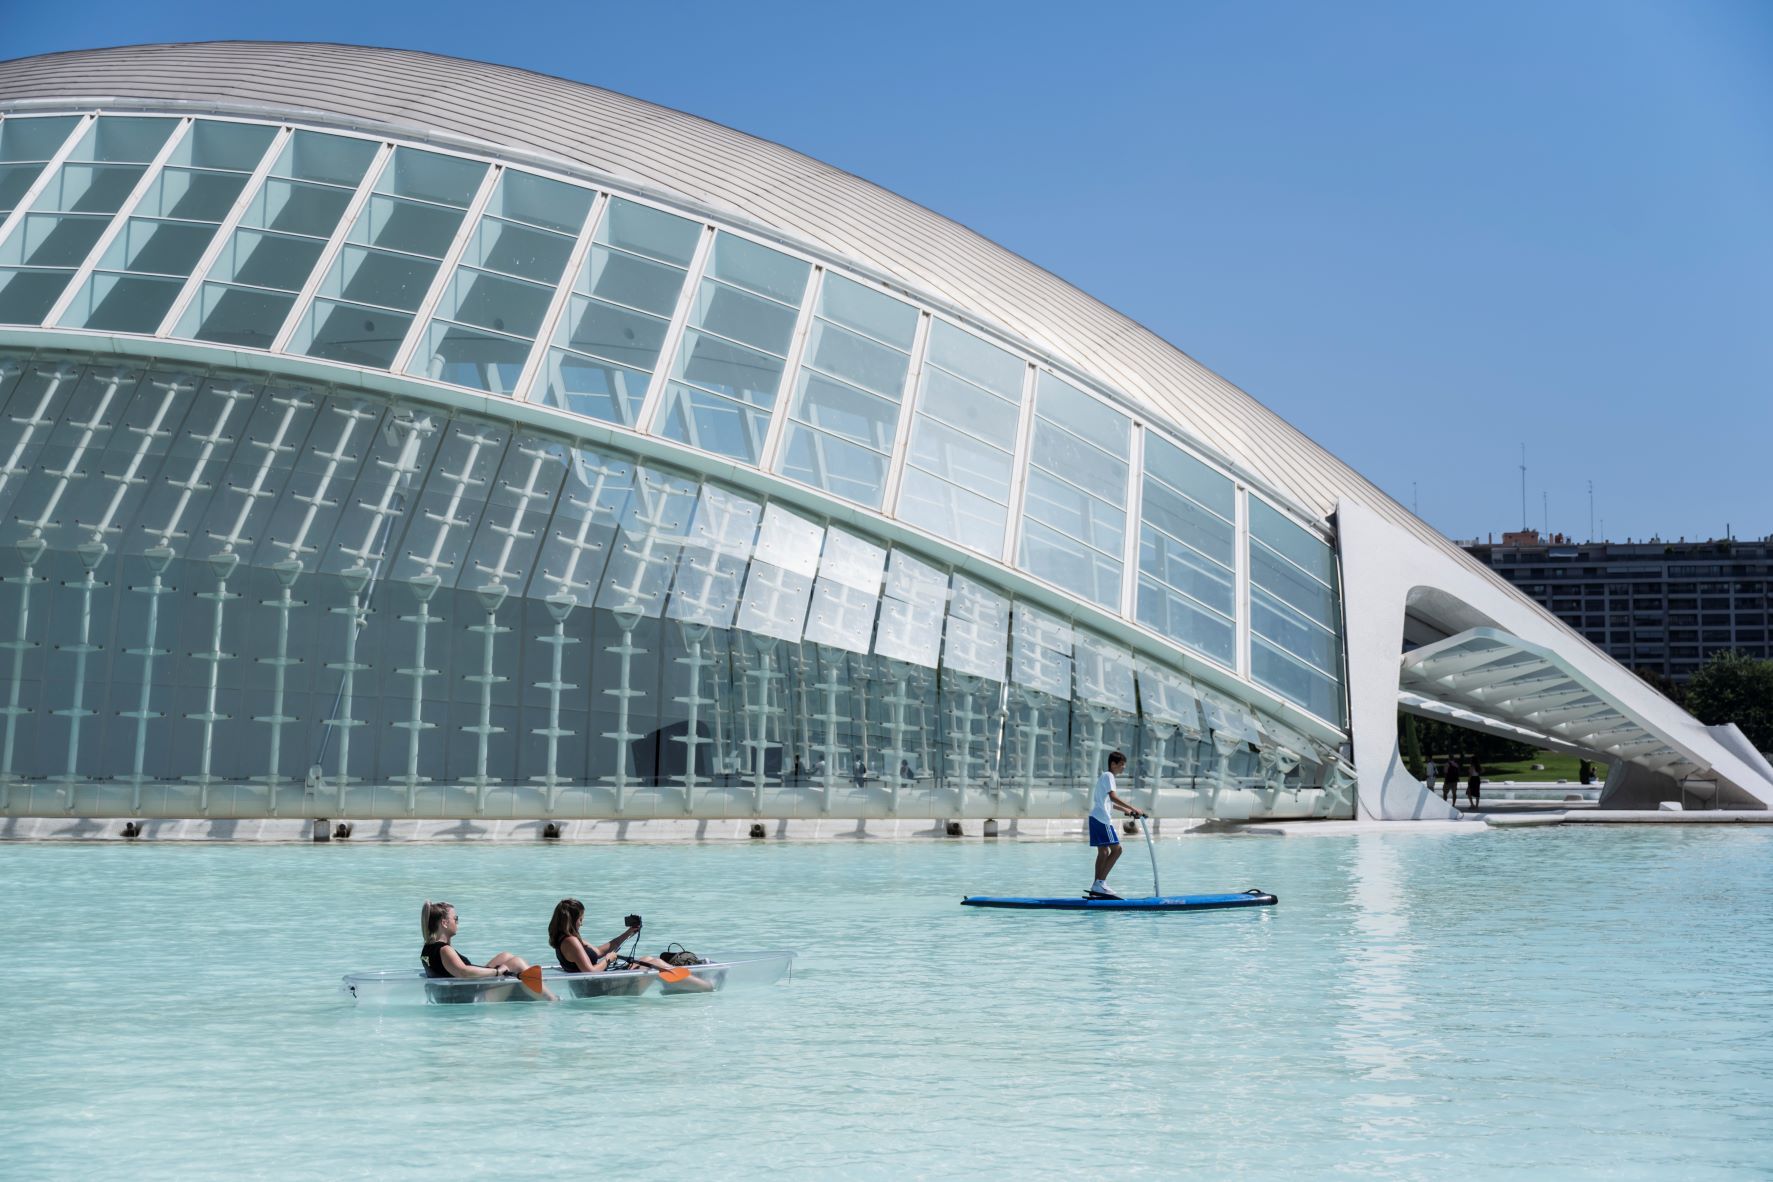 La Ciutat de les Arts i les Ciències ofrece actividades acuáticas